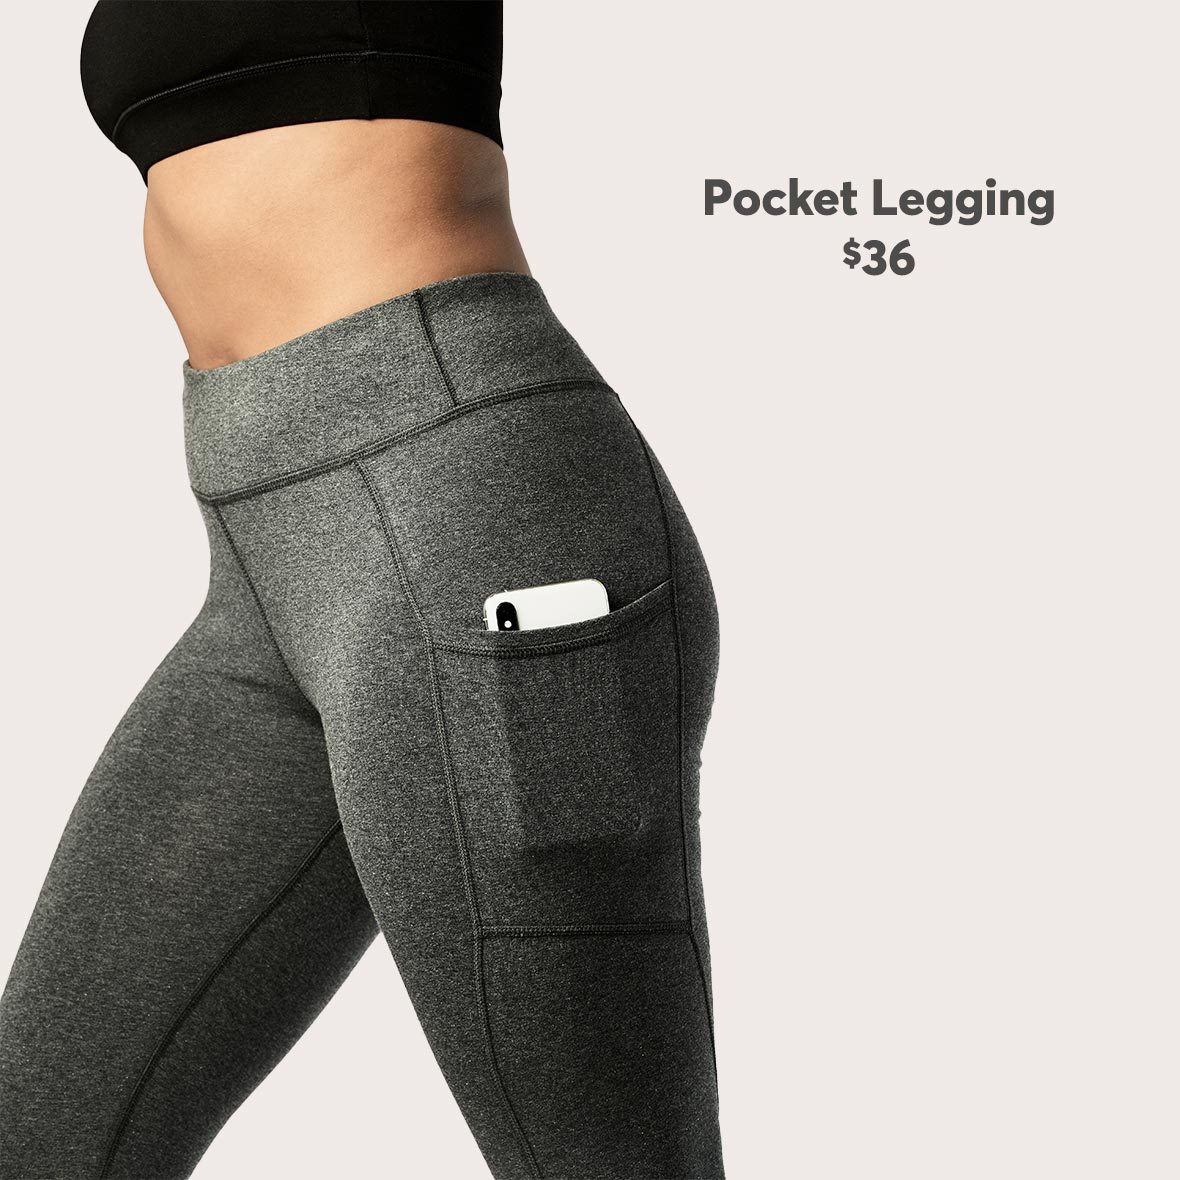 Pocket Leggings $36